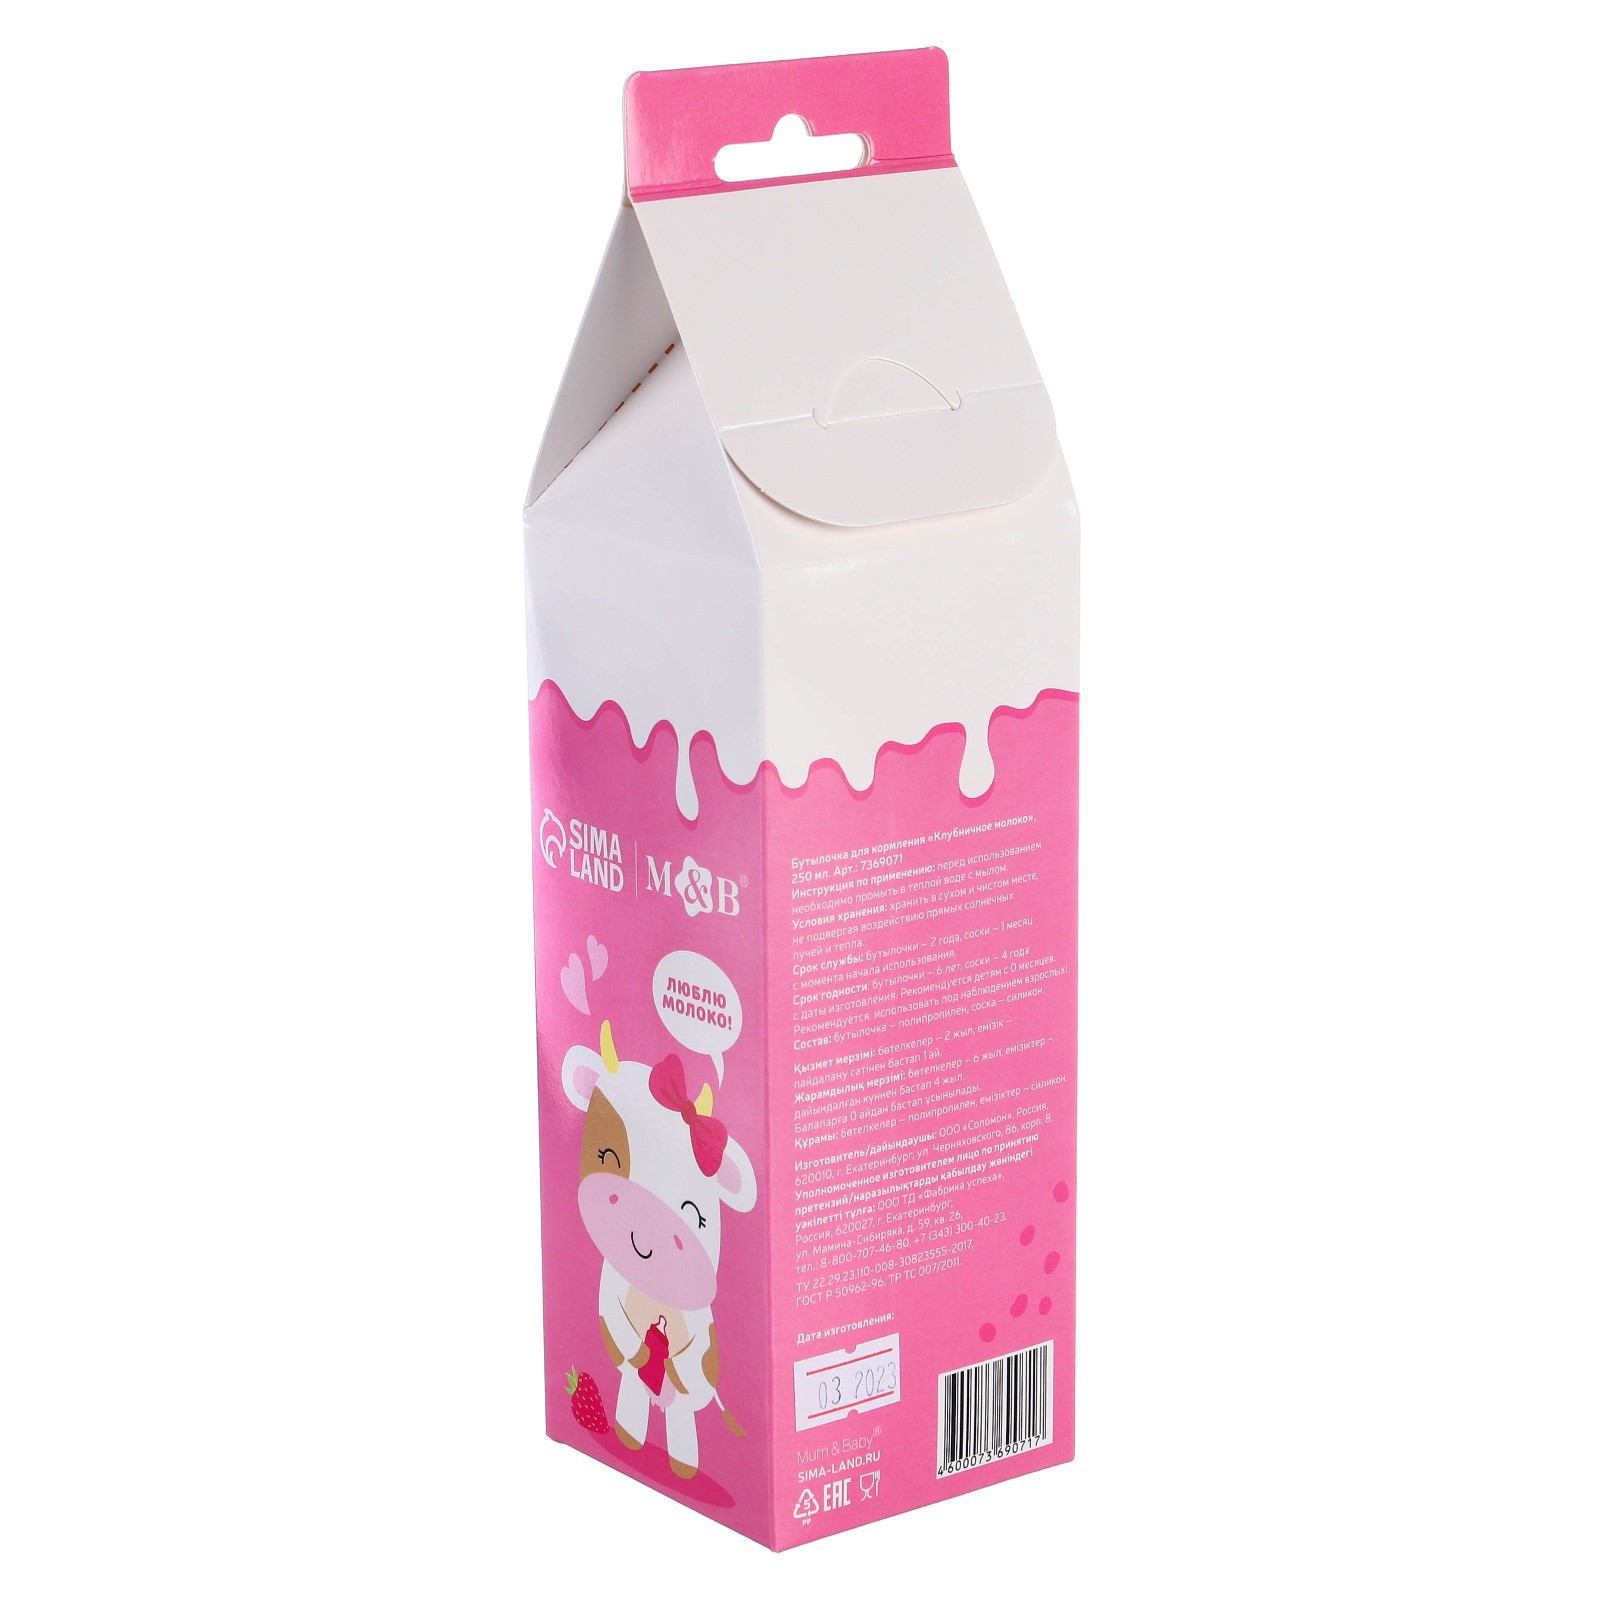 Бутылочка Mum and Baby для кормления подарочная «Клубничное молоко» 250 мл. с соской с ручками - фото 2